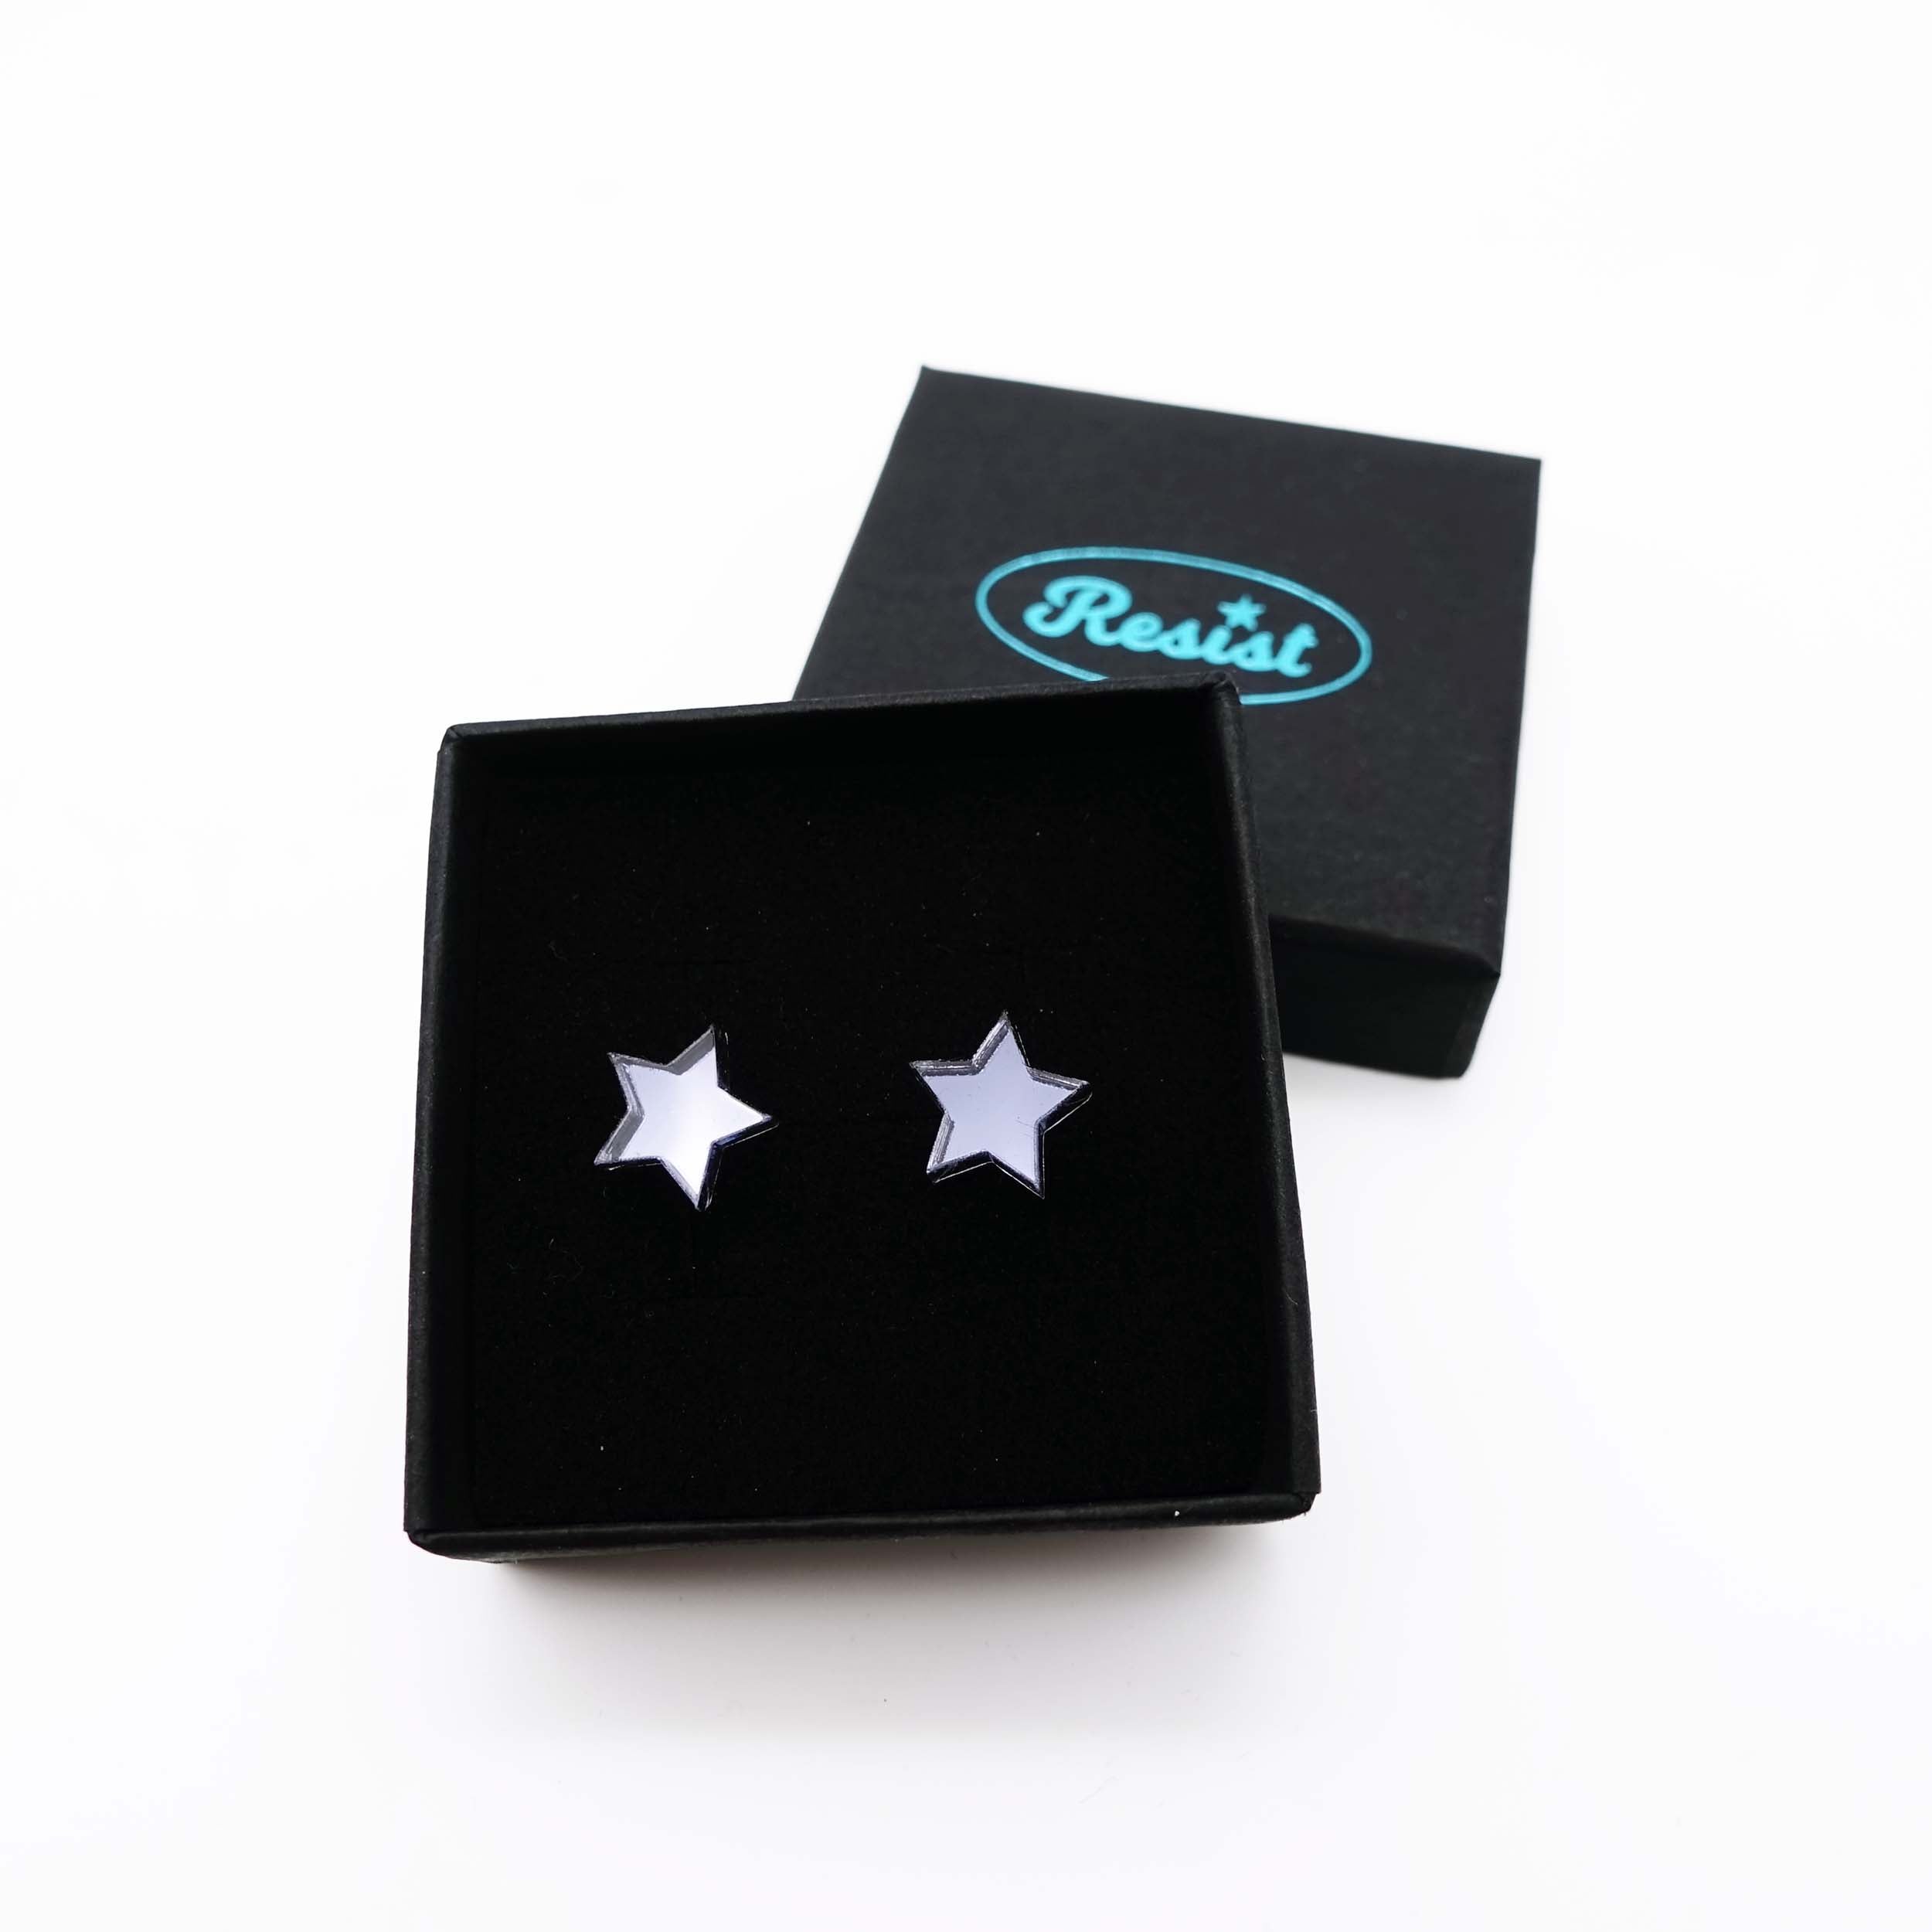 Slate mirror star stud earrings shown in box. 